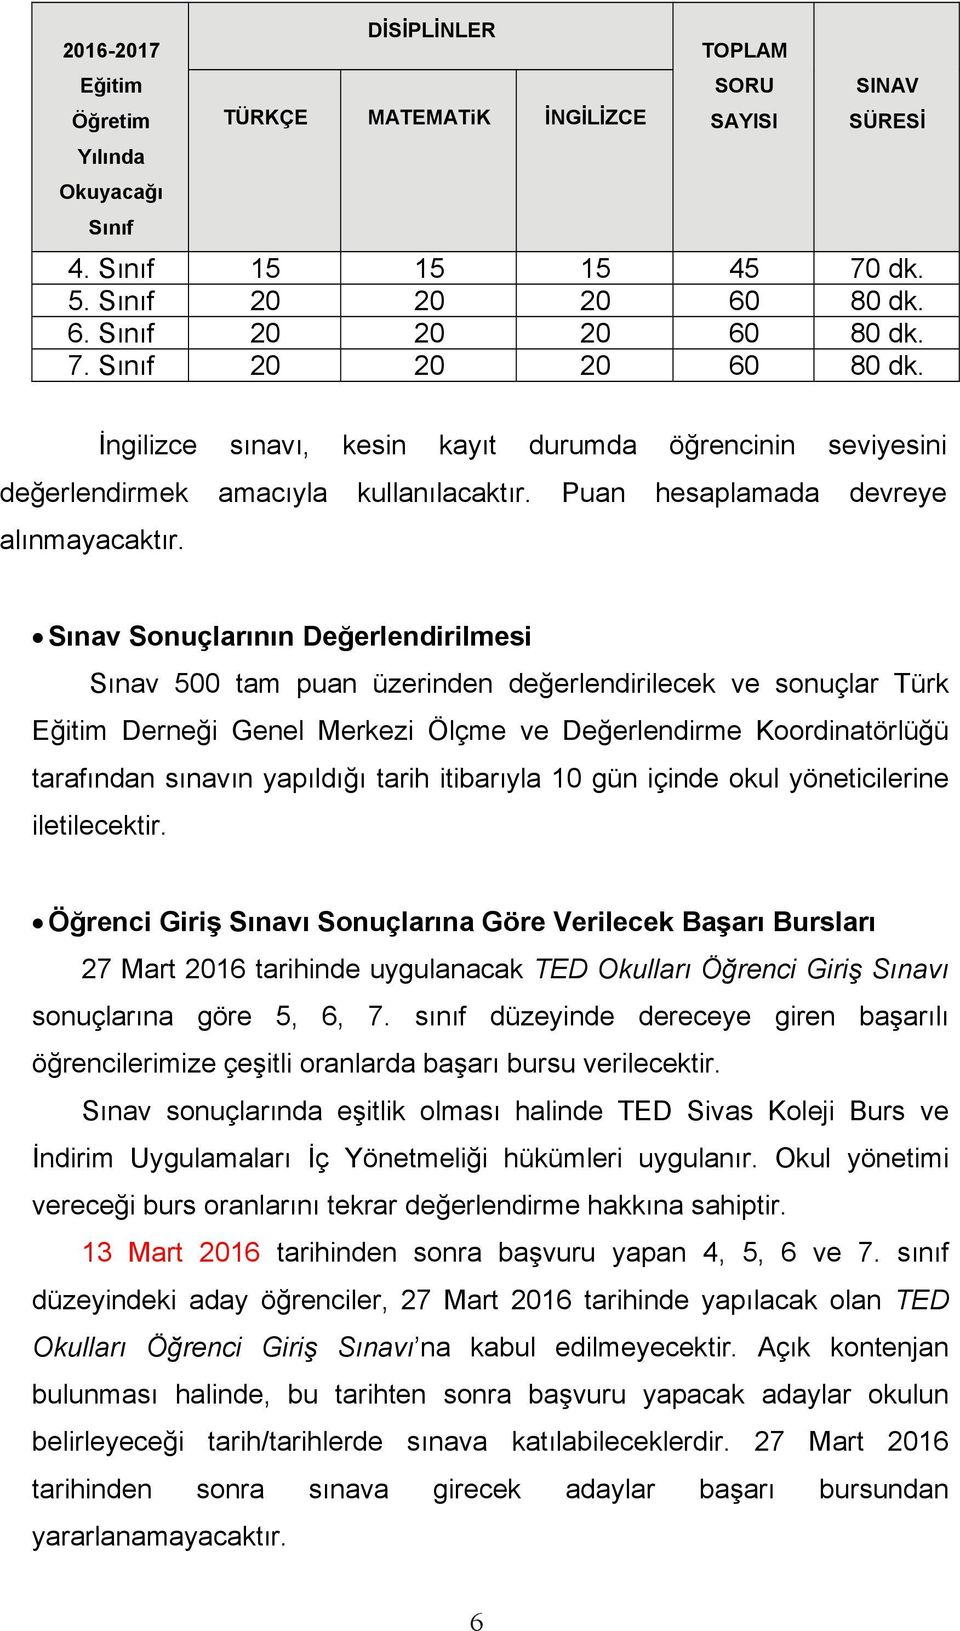 Sınav Sonuçlarının Değerlendirilmesi Sınav 500 tam puan üzerinden değerlendirilecek ve sonuçlar Türk Eğitim Derneği Genel Merkezi Ölçme ve Değerlendirme Koordinatörlüğü tarafından sınavın yapıldığı